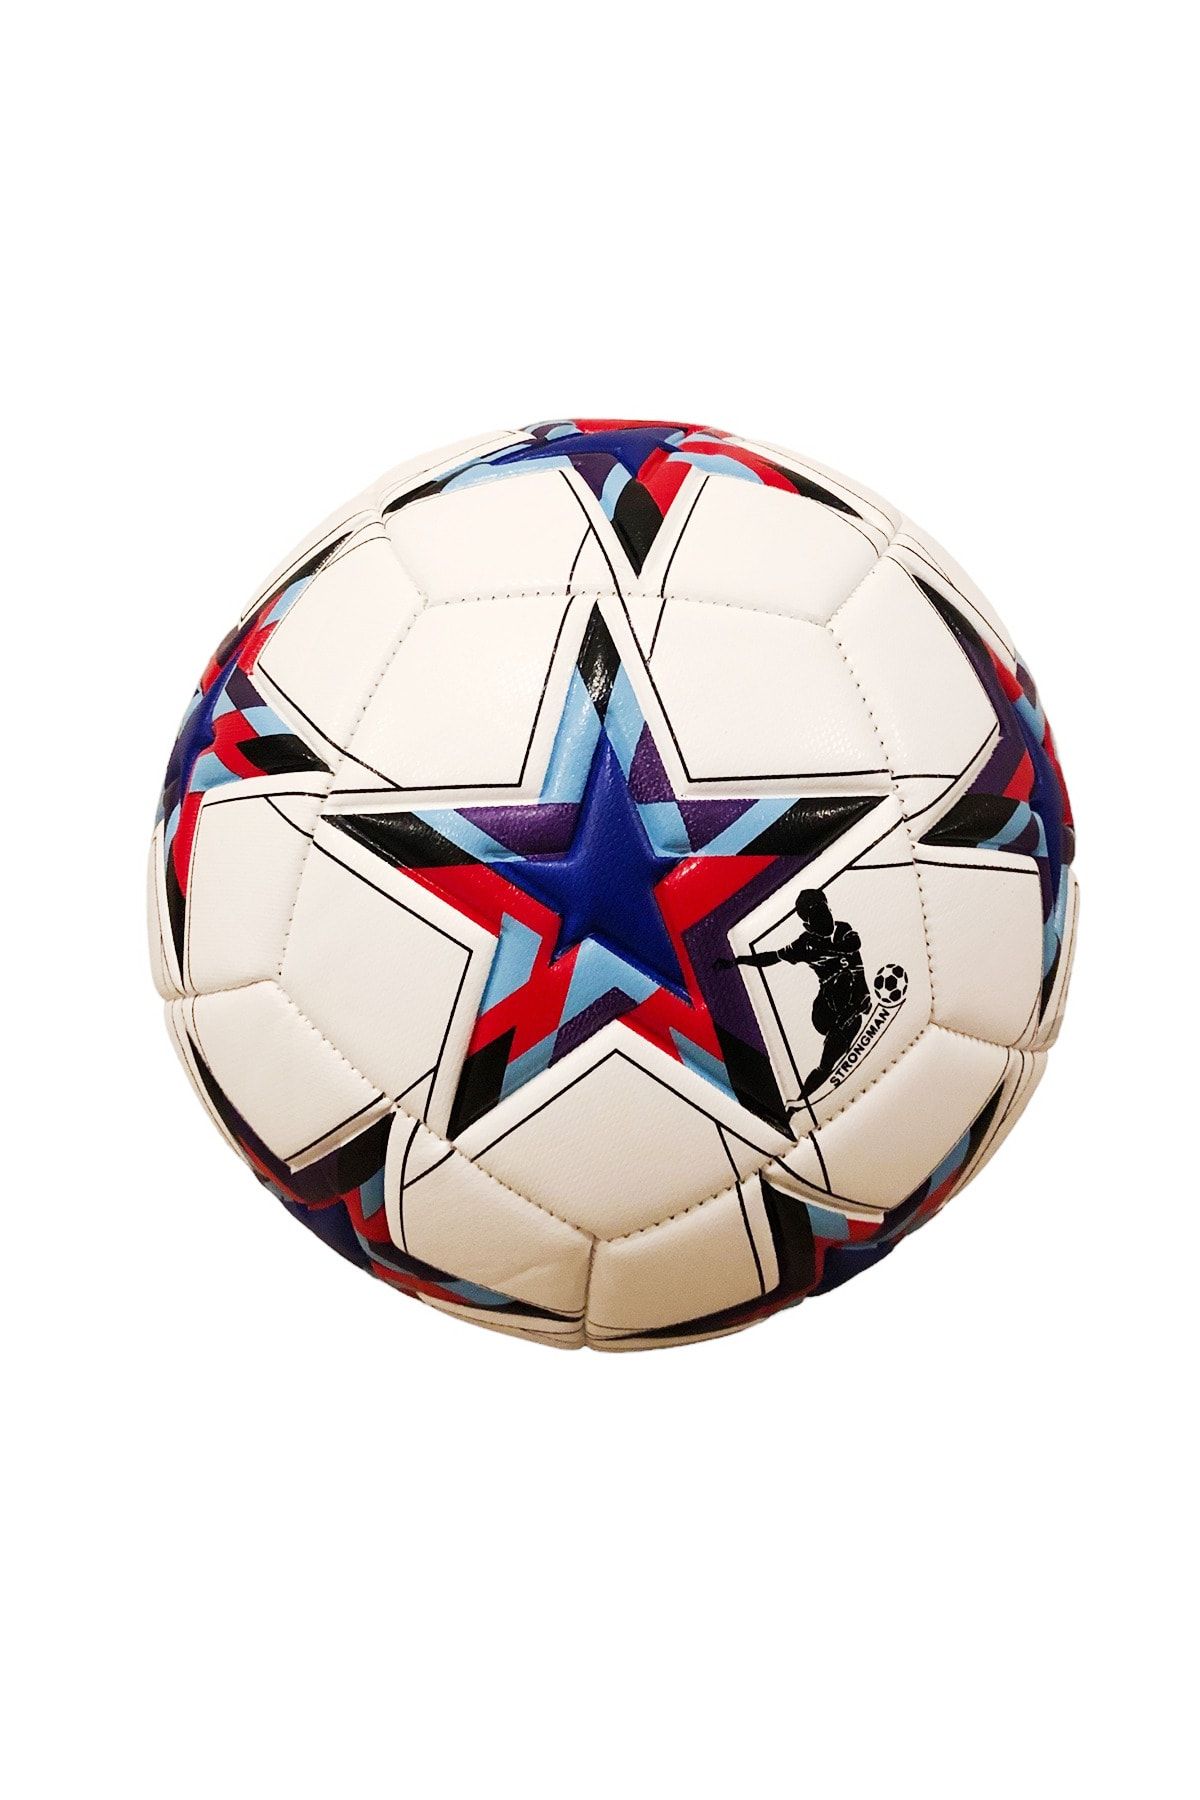 ULTIO Orijinal Futbol Topu Profesyonel Tasarım Şampiyonlar Ligi 5 Numara Tüm Sahalara Uygun 410gr Maç Topu